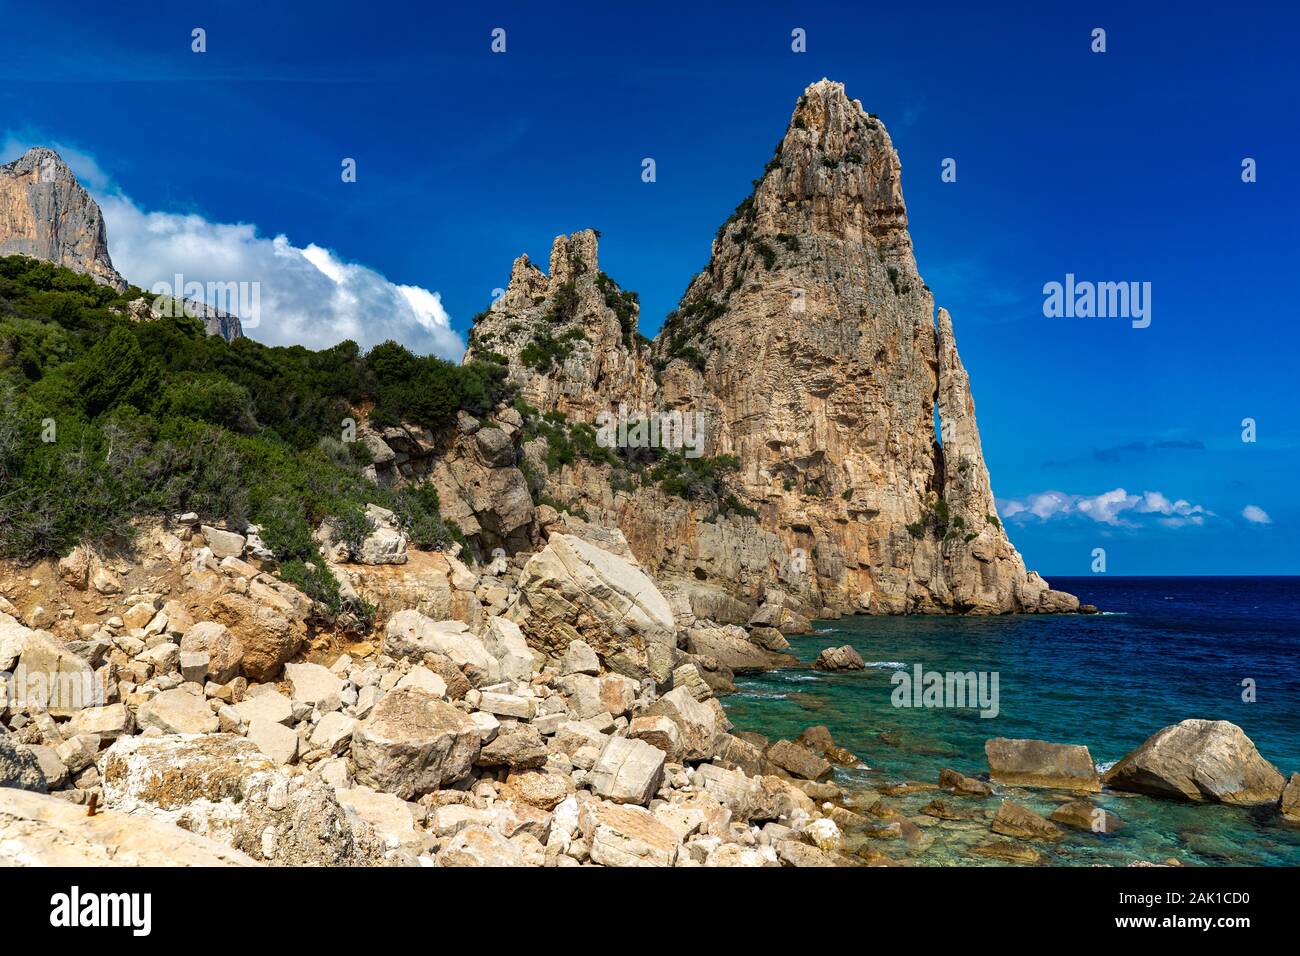 Pedra Longa di Baunei - bellissima spiaggia rocciosa in Sardegna. Bel tempo e bellissima spiaggia in Ogliastra, Sardiniam Italia Foto Stock